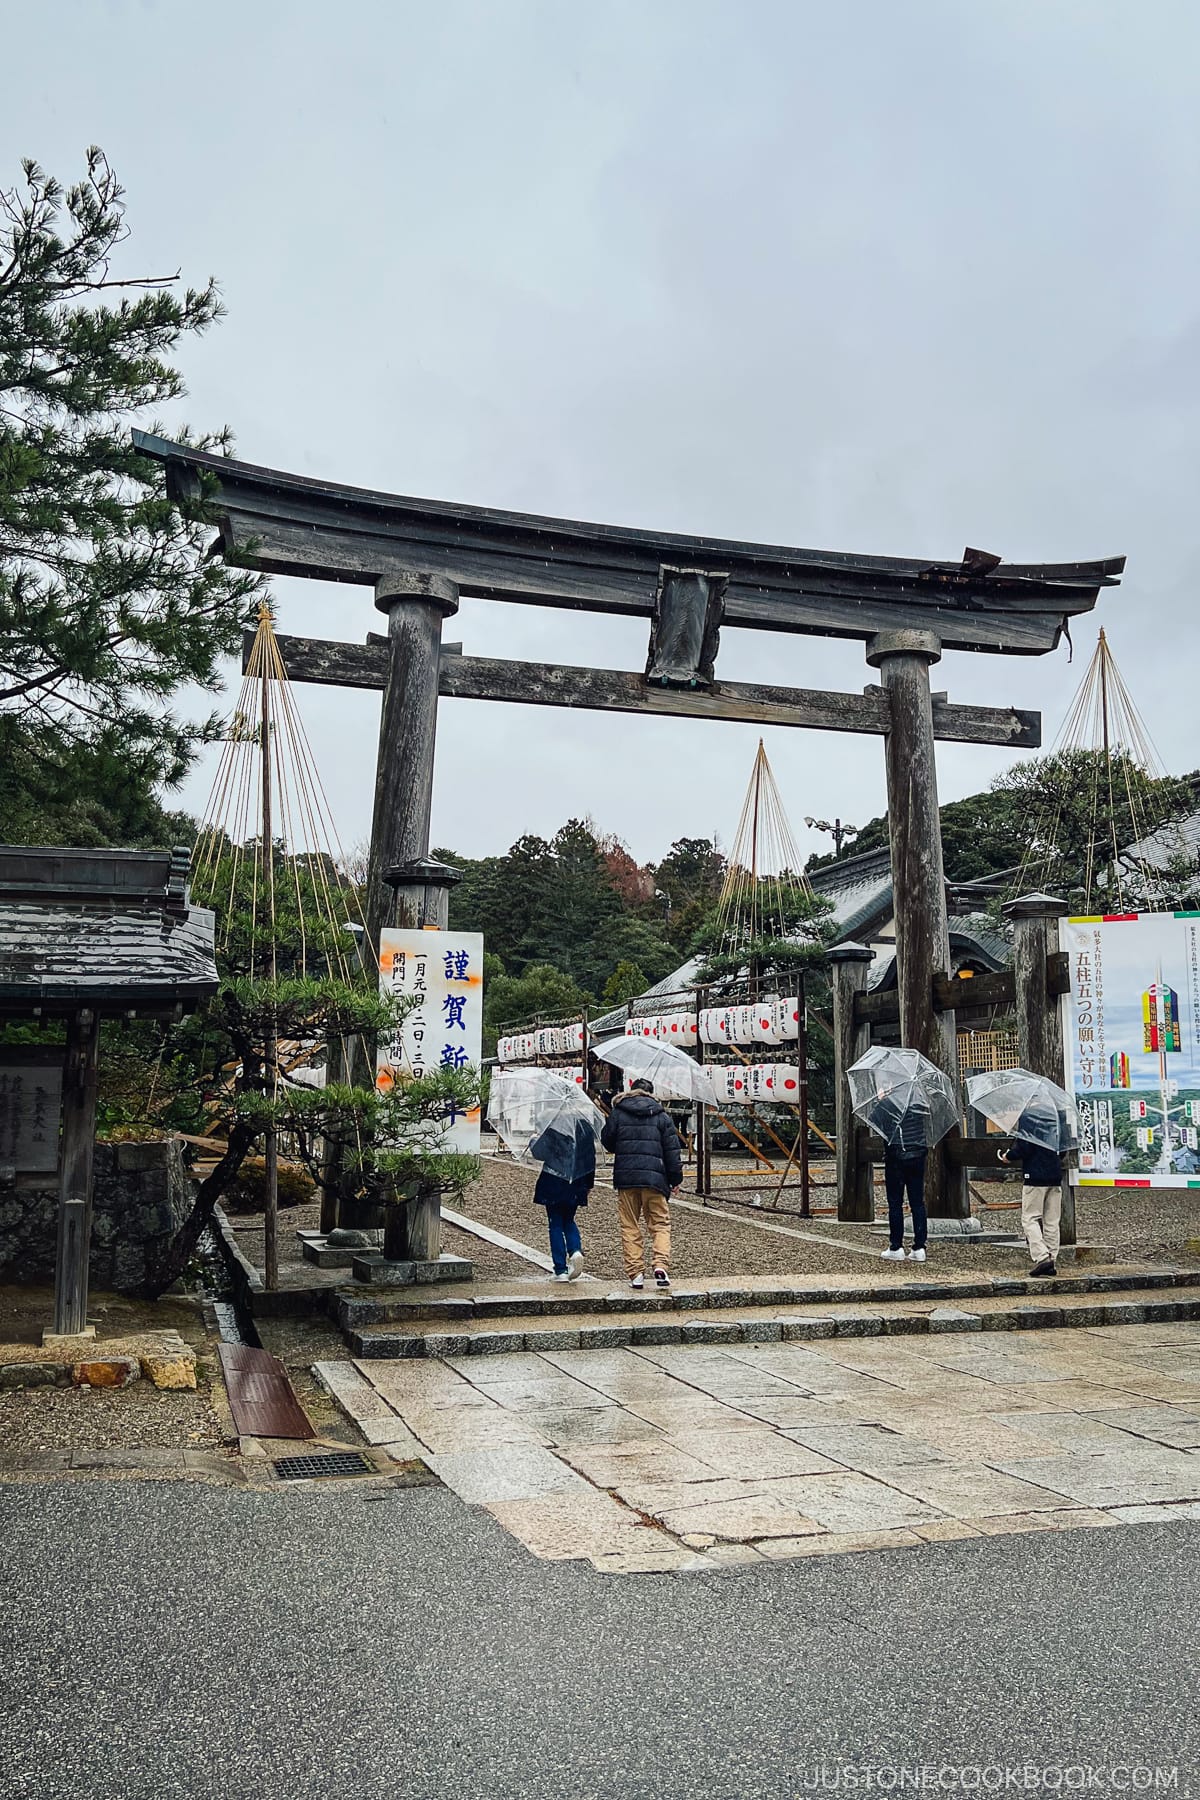 Torii Gate at a shrine